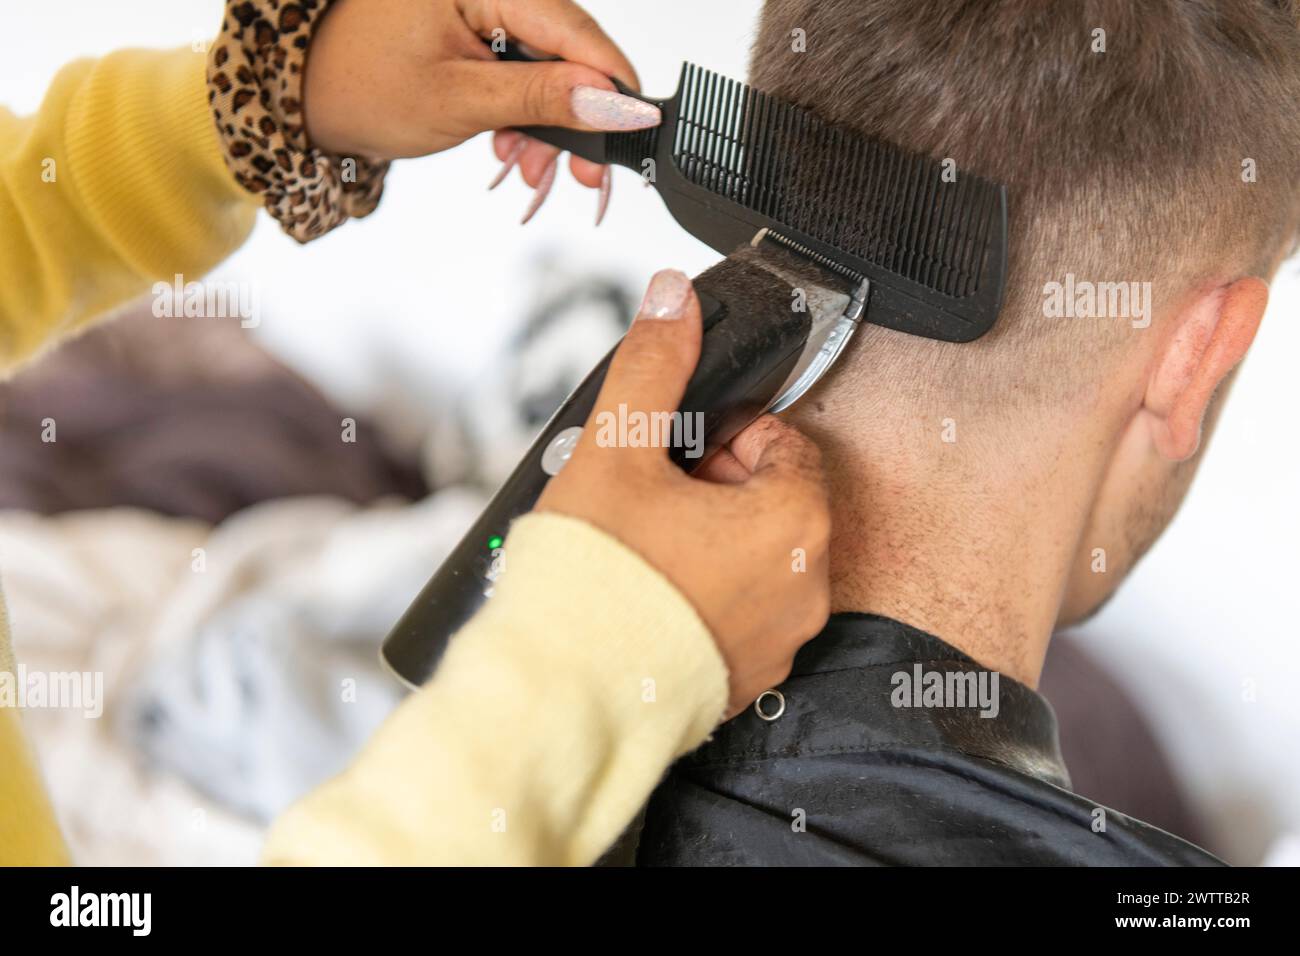 Une personne reçoit une coupe de cheveux d'un coiffeur à l'aide d'une tondeuse électrique et d'un peigne. Banque D'Images